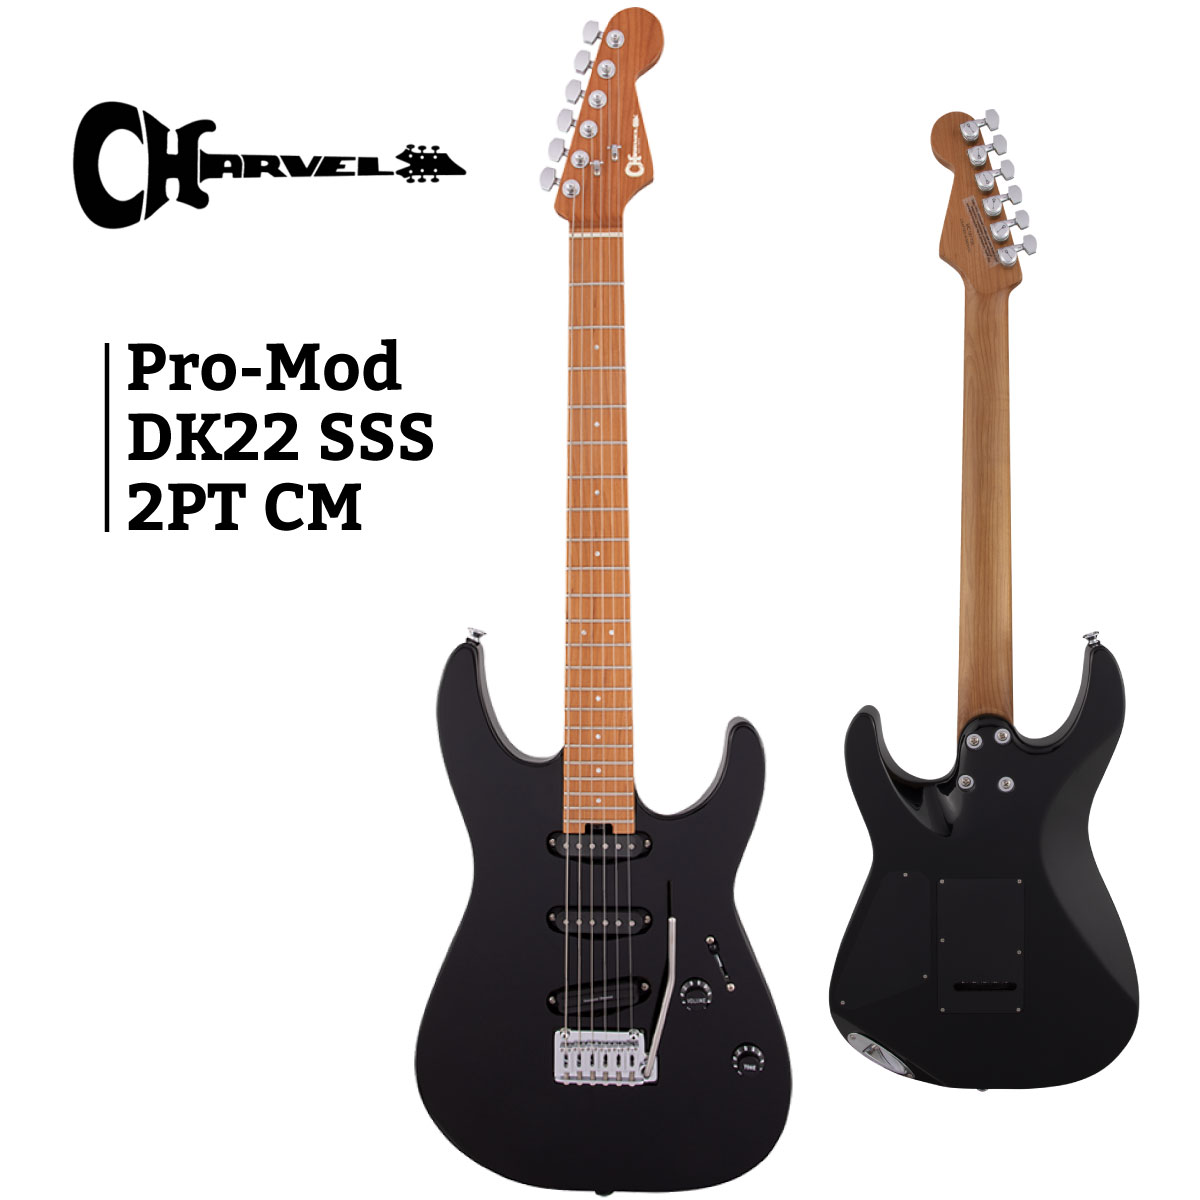 Charvel Pro-Mod DK22 SSS 2PT CM -Gloss Black- 割引価格 新品 エレキギター 黒 ストラトキャスタータイプ 売り出し Stratocaster シャーベル Electric Guitar ブラック